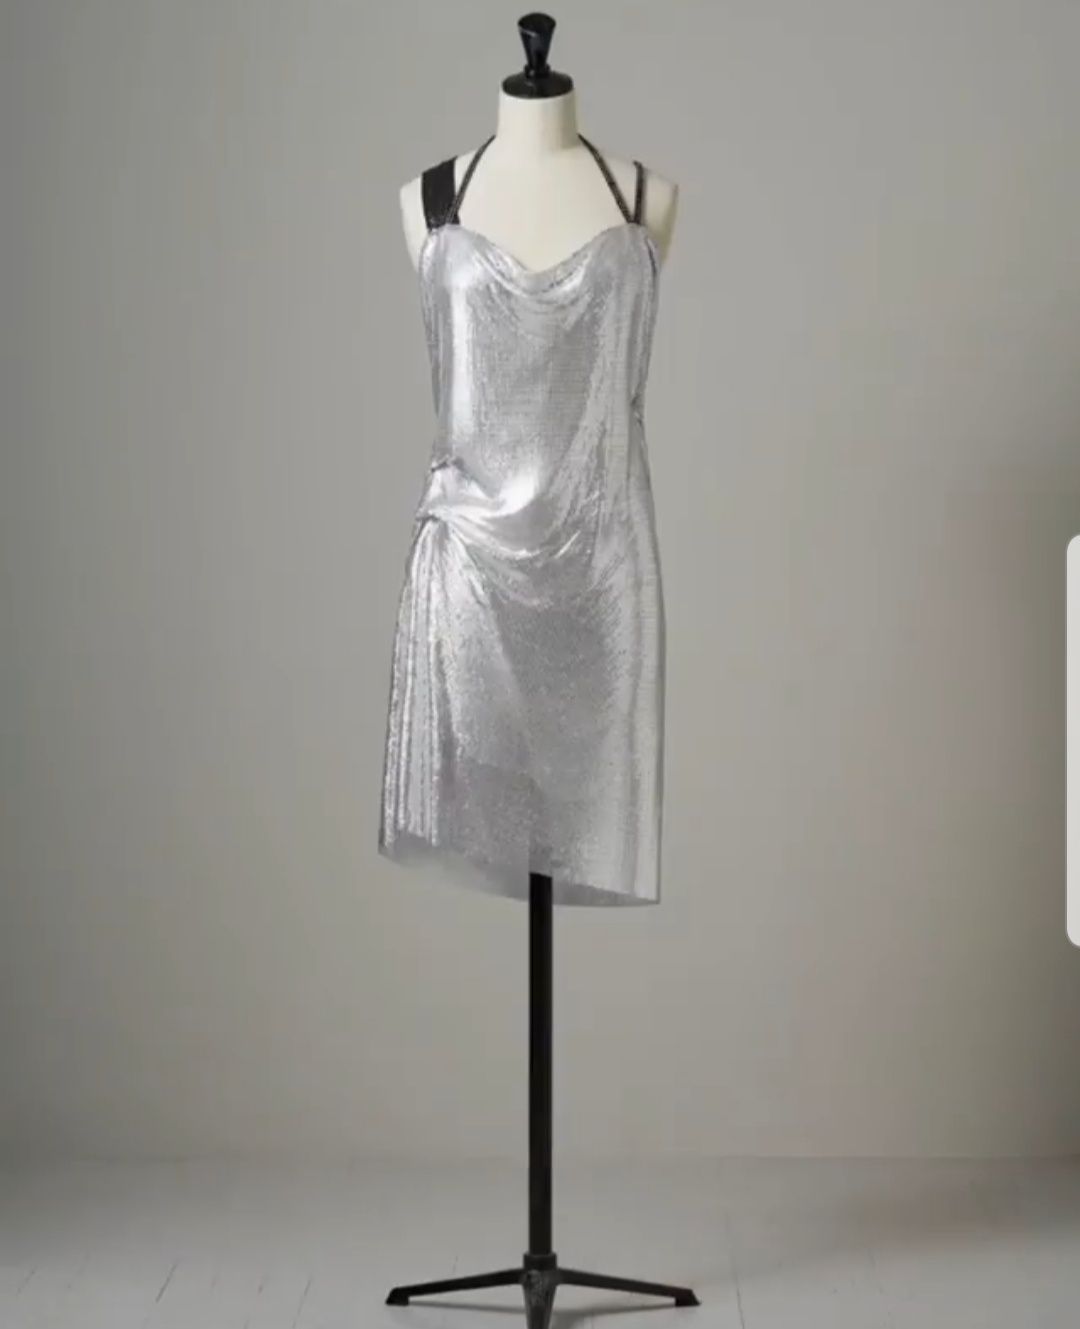 Srebrna luksusowa sukienka H&M Gala Collection z metalowych płytek.